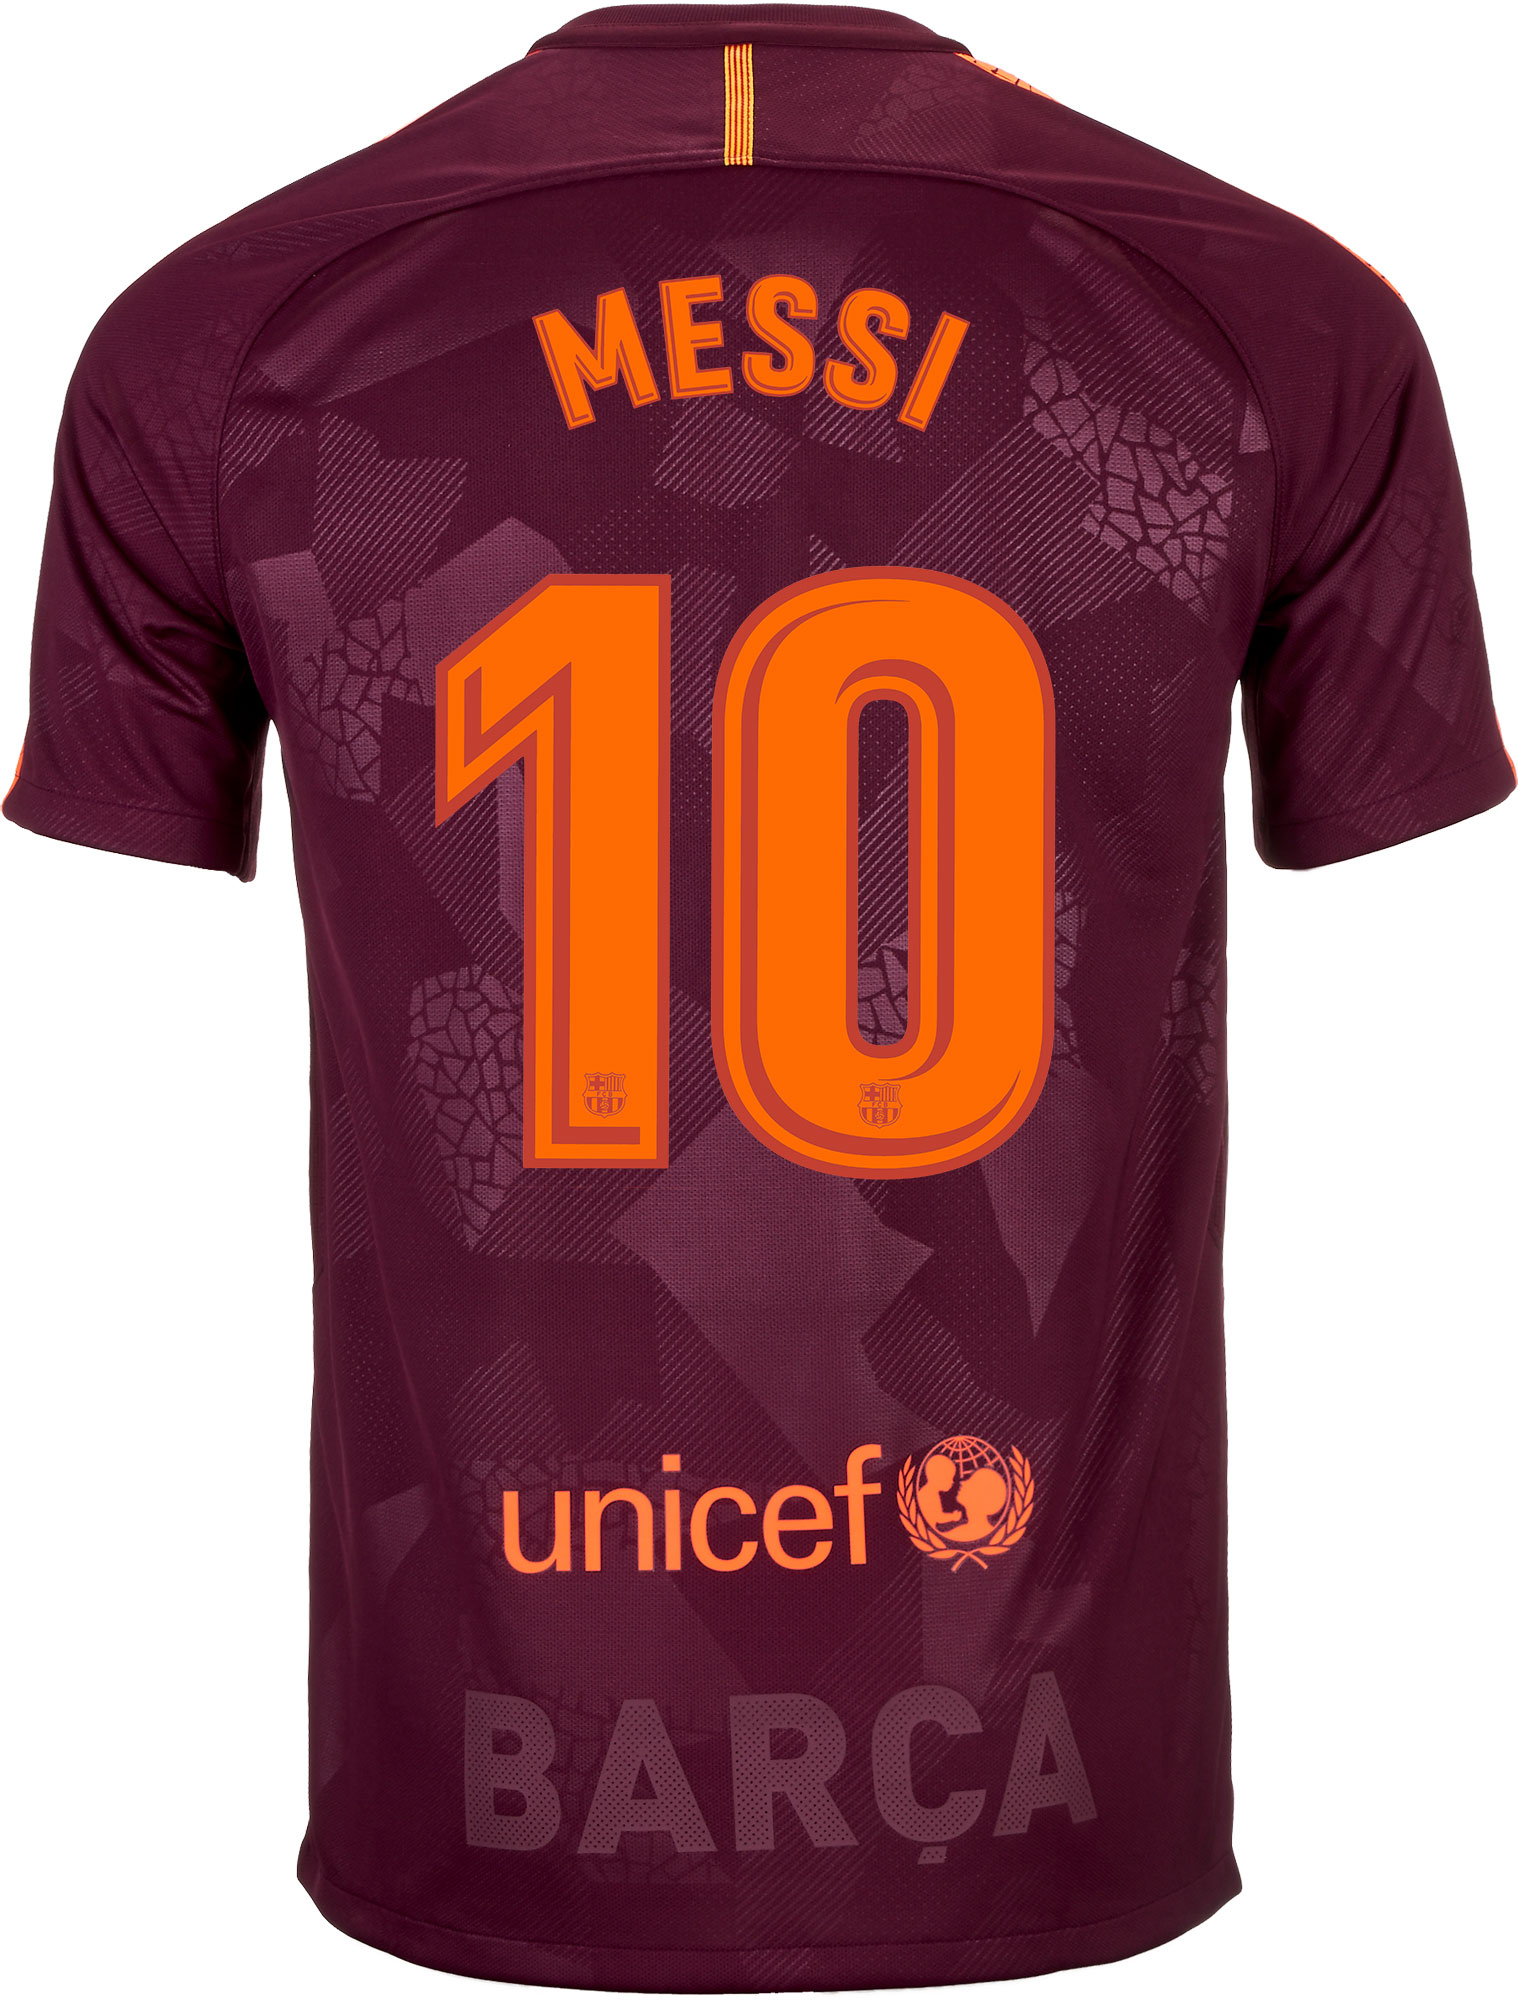 rem verkiezen Aziatisch Nike Kids Lionel Messi Barcelona 3rd Jersey 2017-18